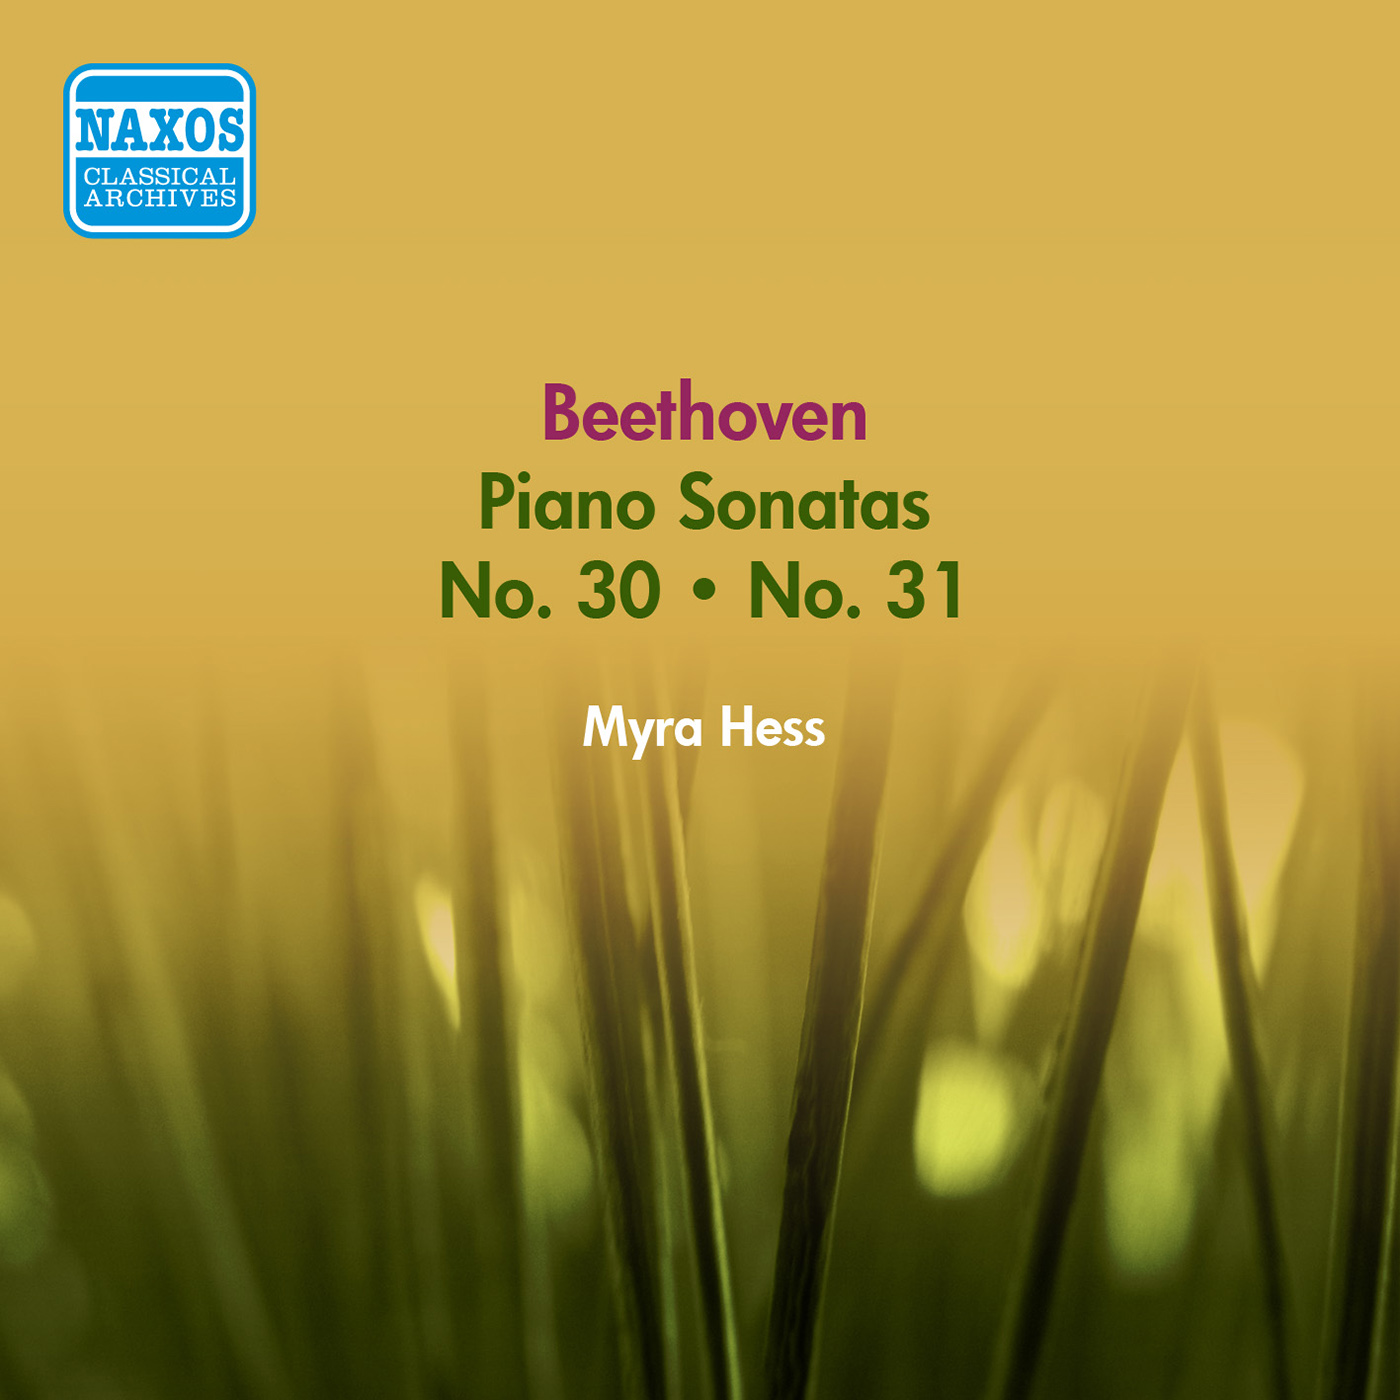 Piano Sonata No. 31 in A-Flat Major, Op. 110: I. Moderato cantabile molto espressivo